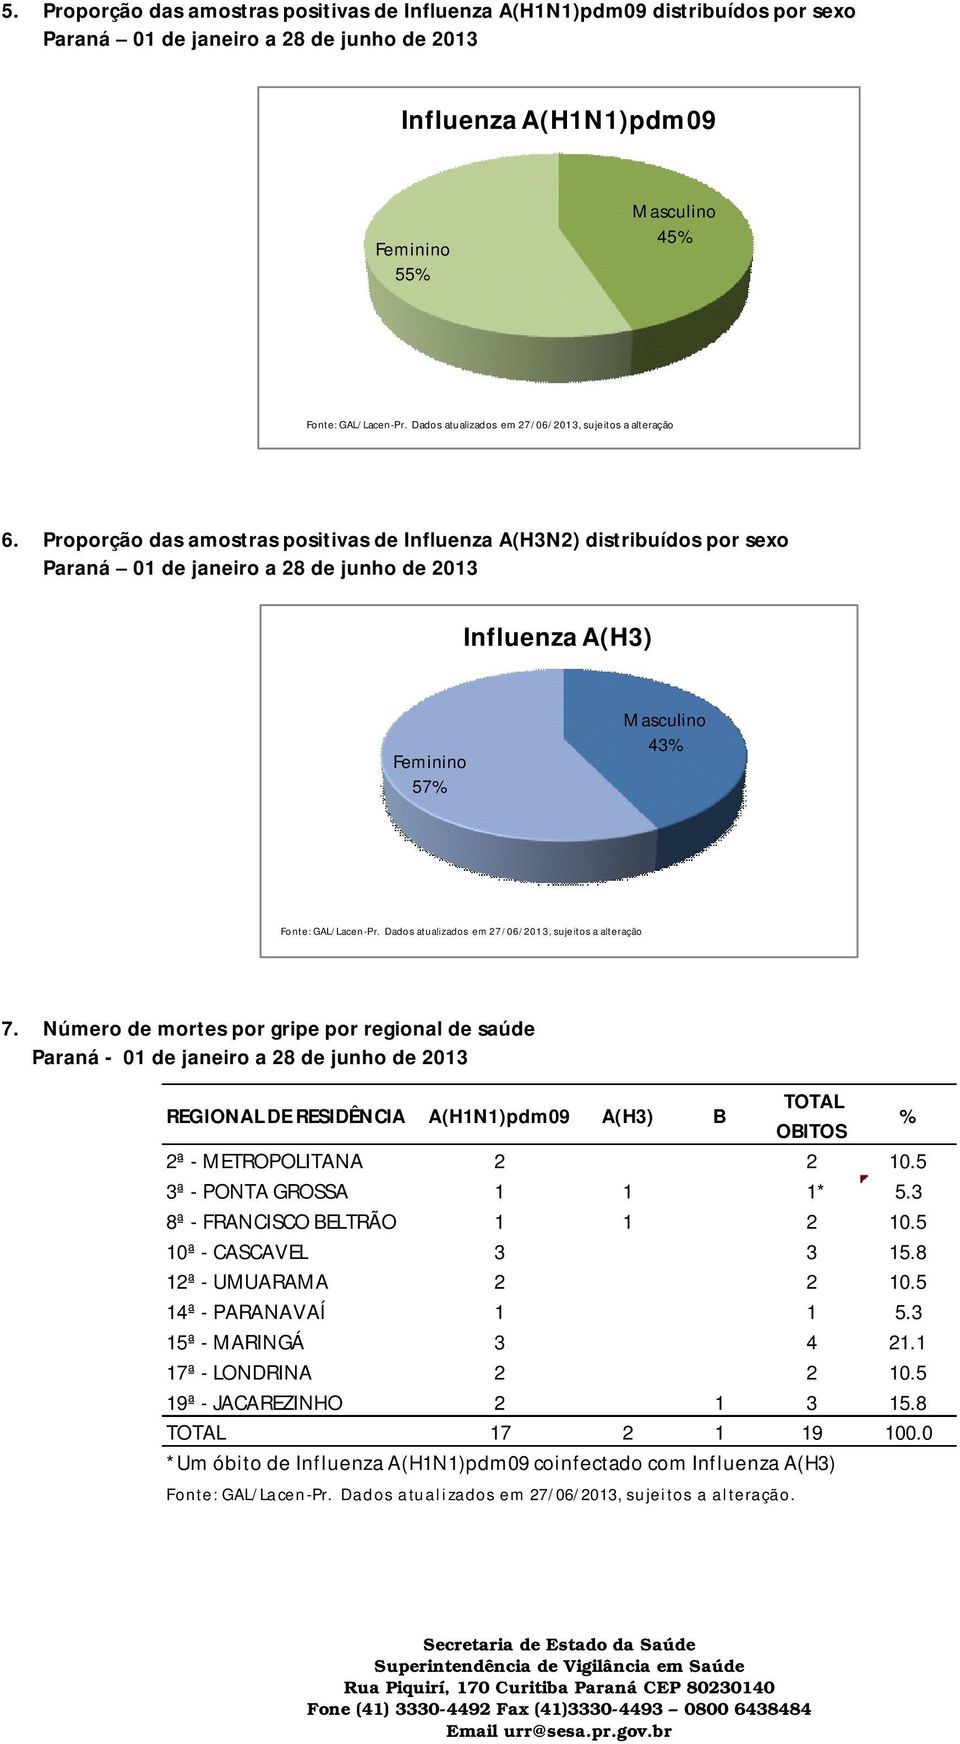 Proporção das amostras positivas de A(H3N2) distribuídos por sexo Paraná 01 de janeiro a 28 de junho de 2013 A(H3) Feminino 57% Masculino 43% Fonte: GAL/Lacen-Pr.